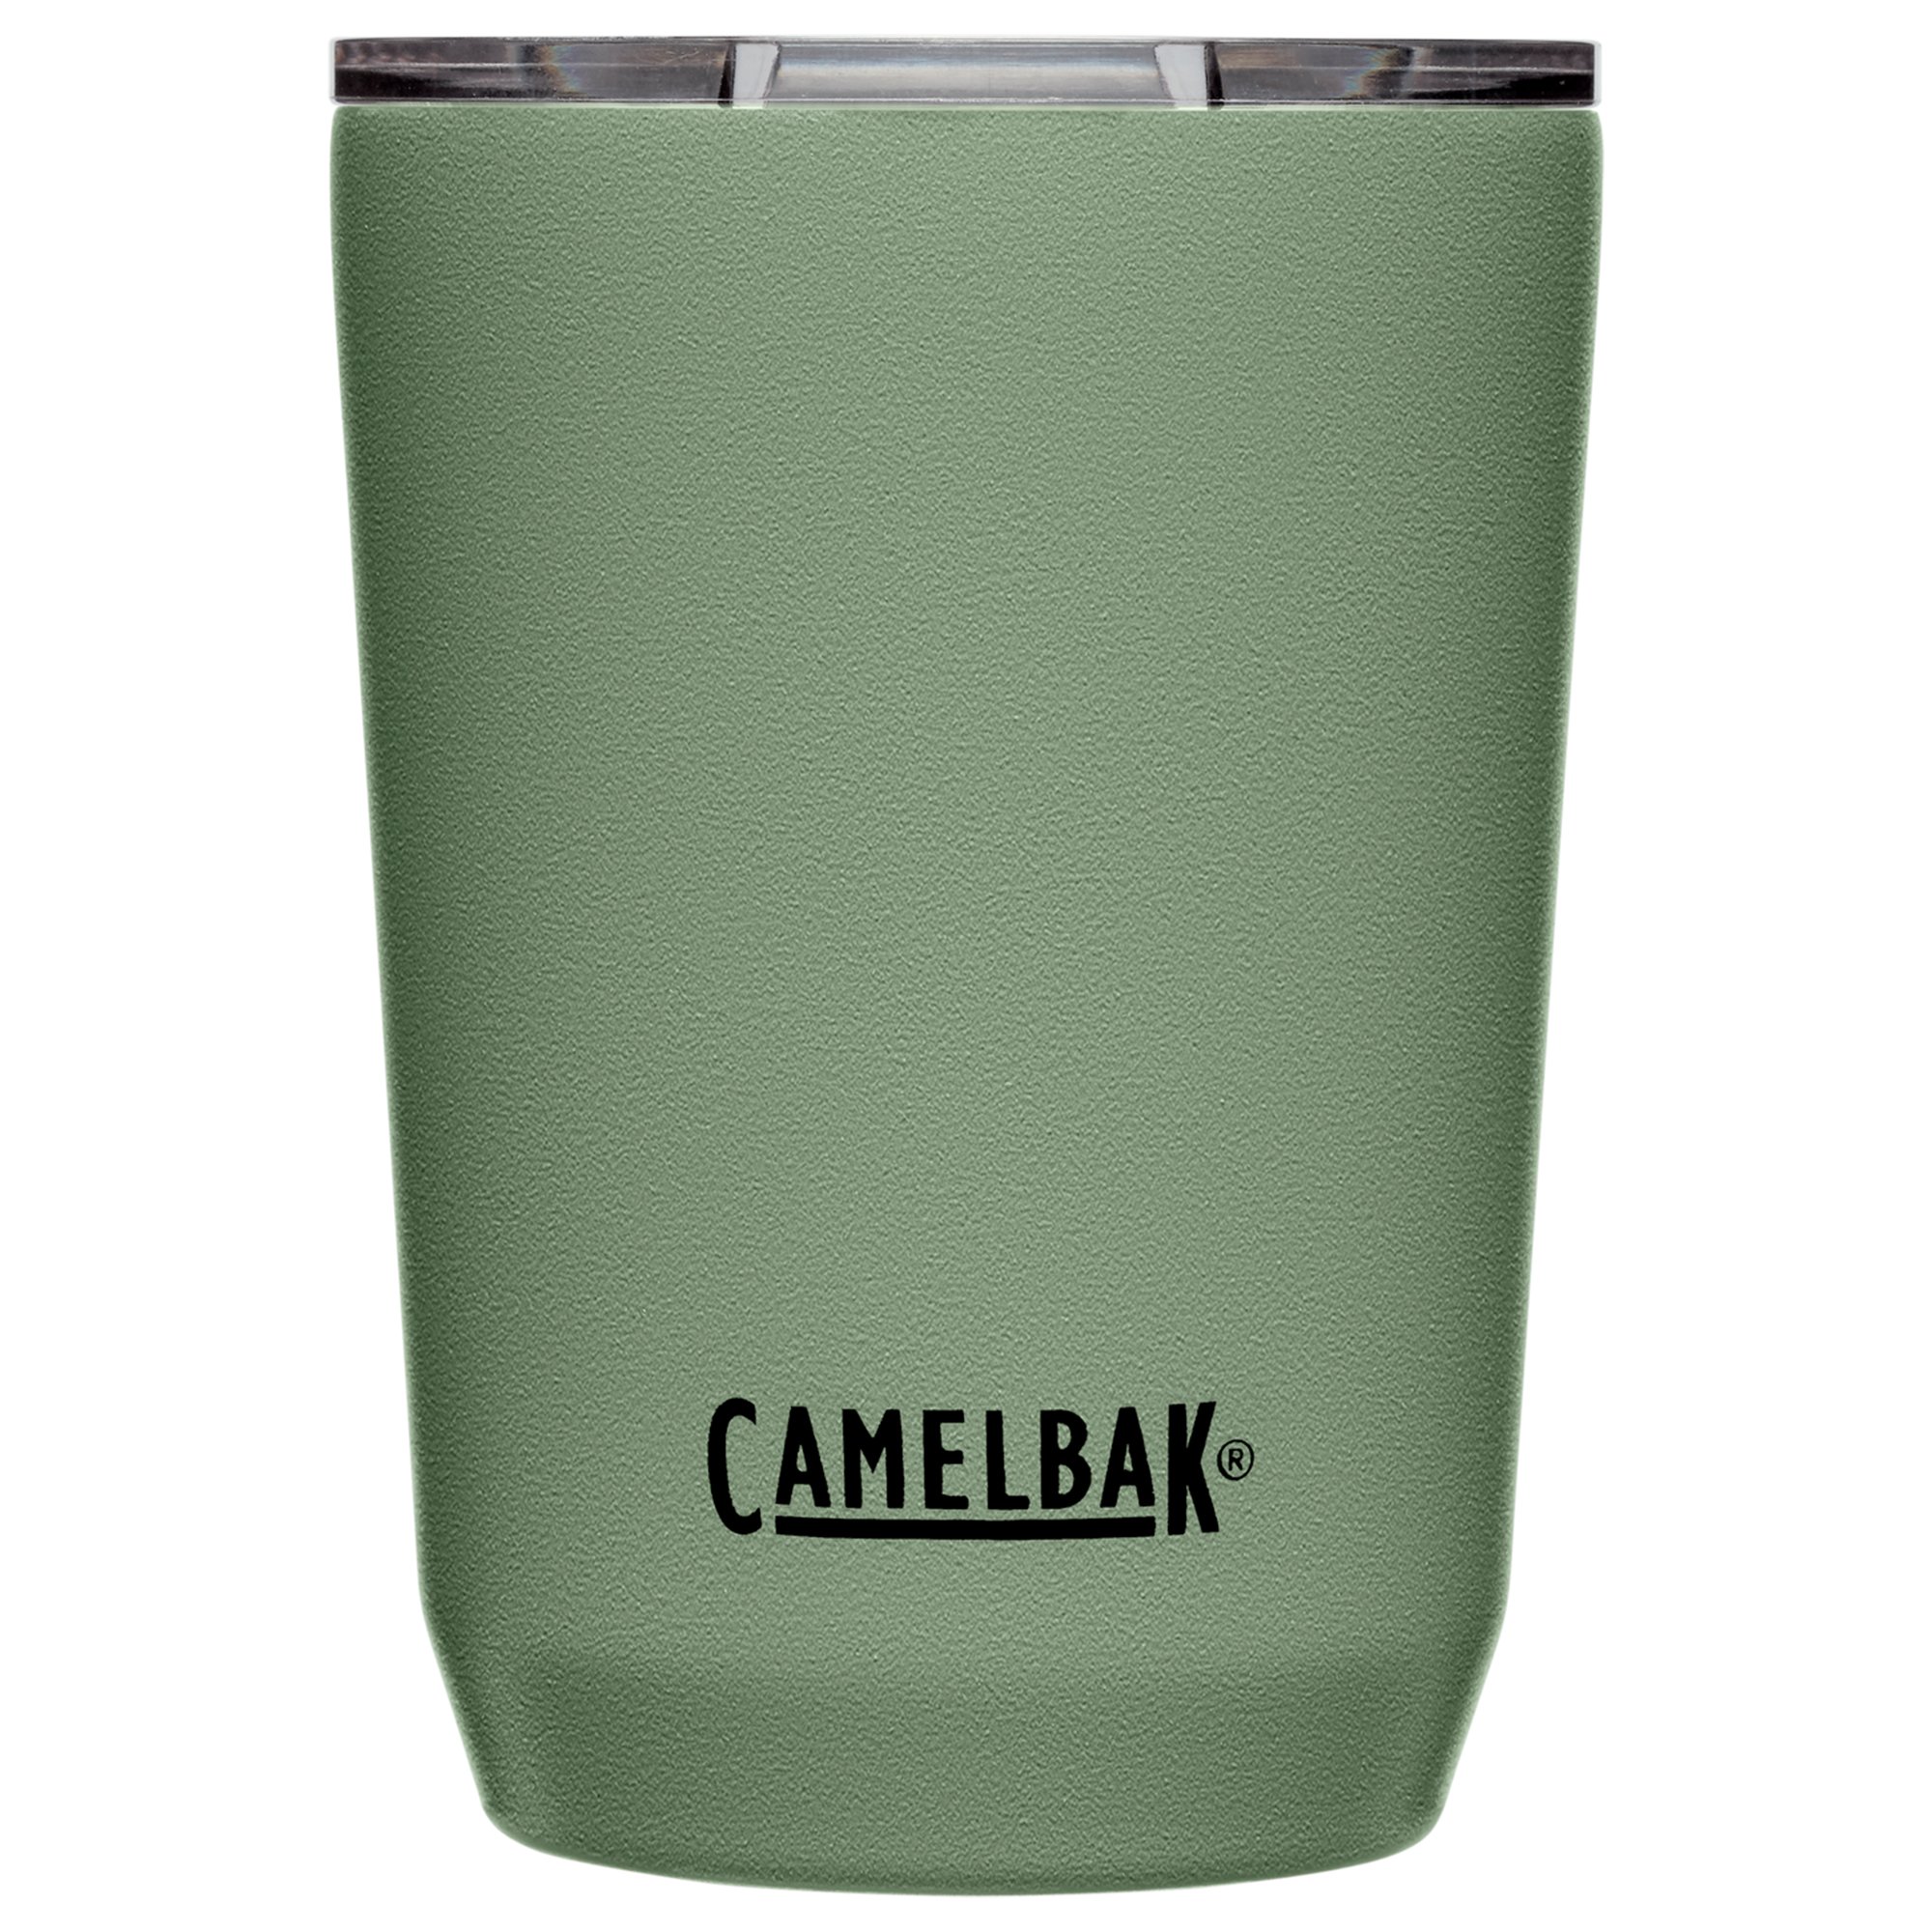 Camelbak Tumbler termosmugg 0,35 liter moss